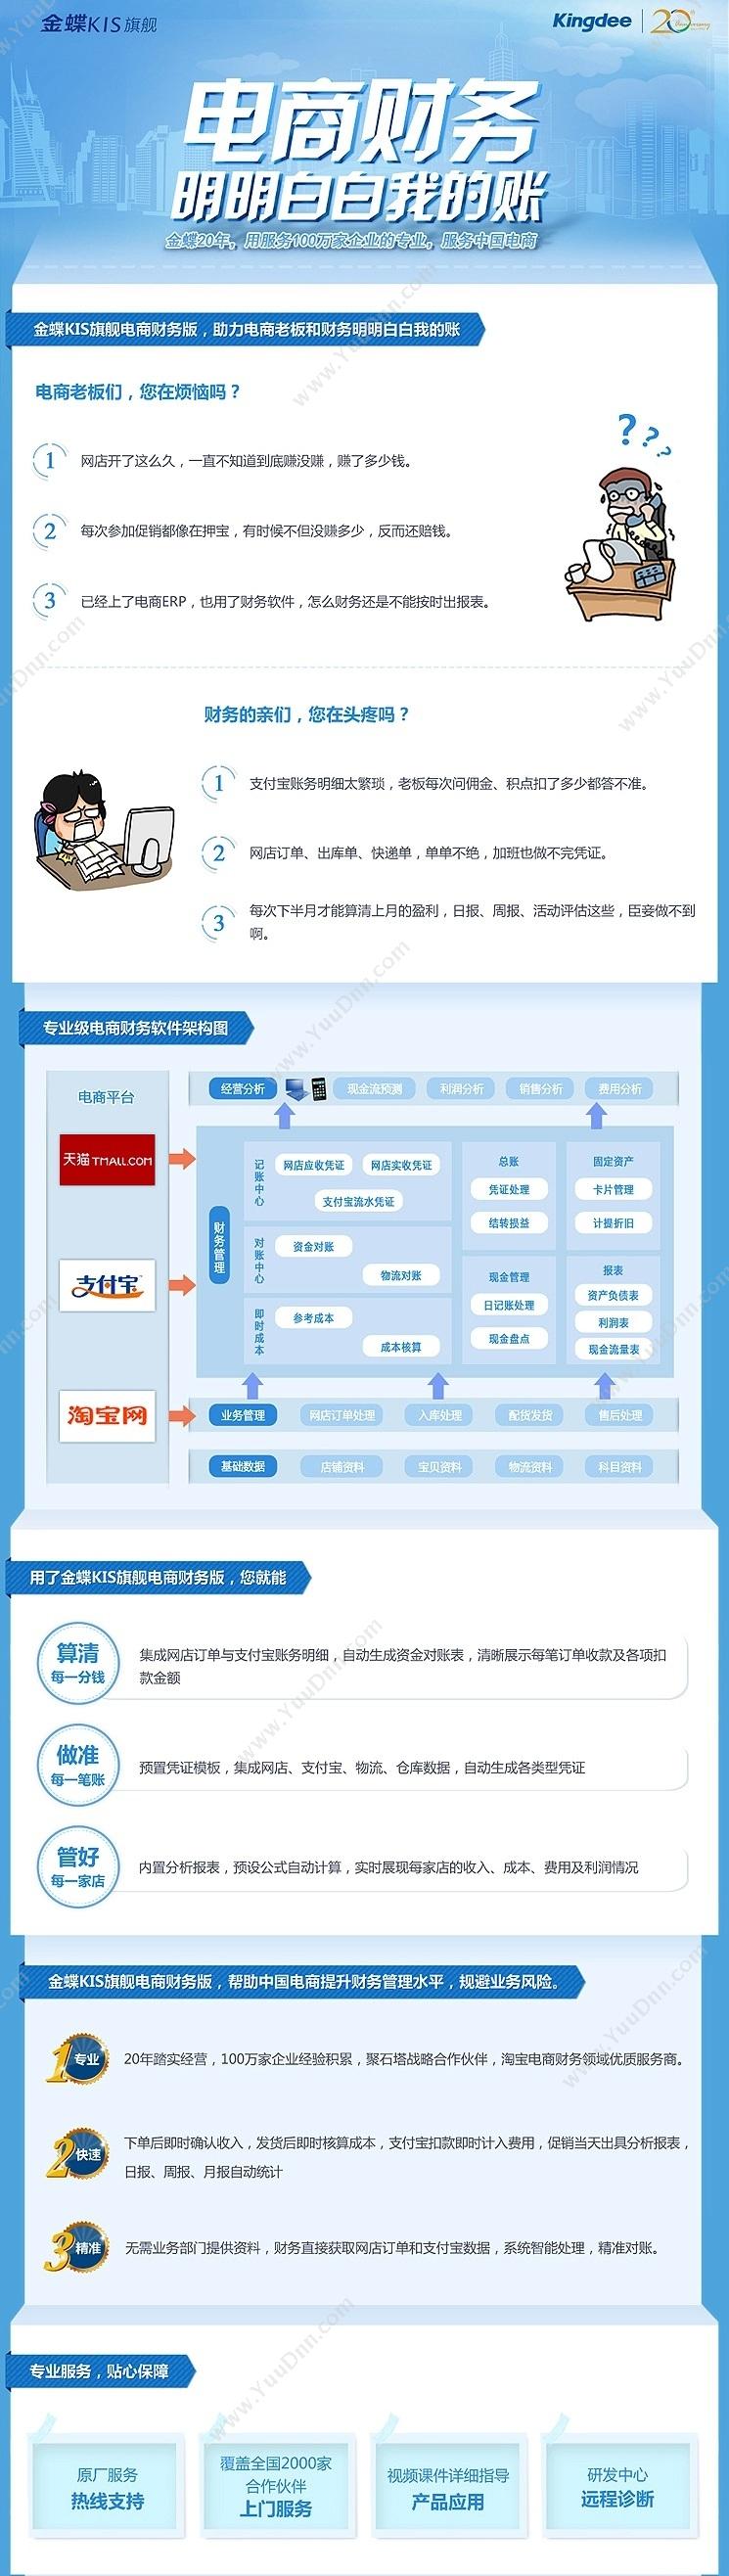 金蝶国际软件集团有限公司 金蝶KIS旗舰-电商版 电商平台